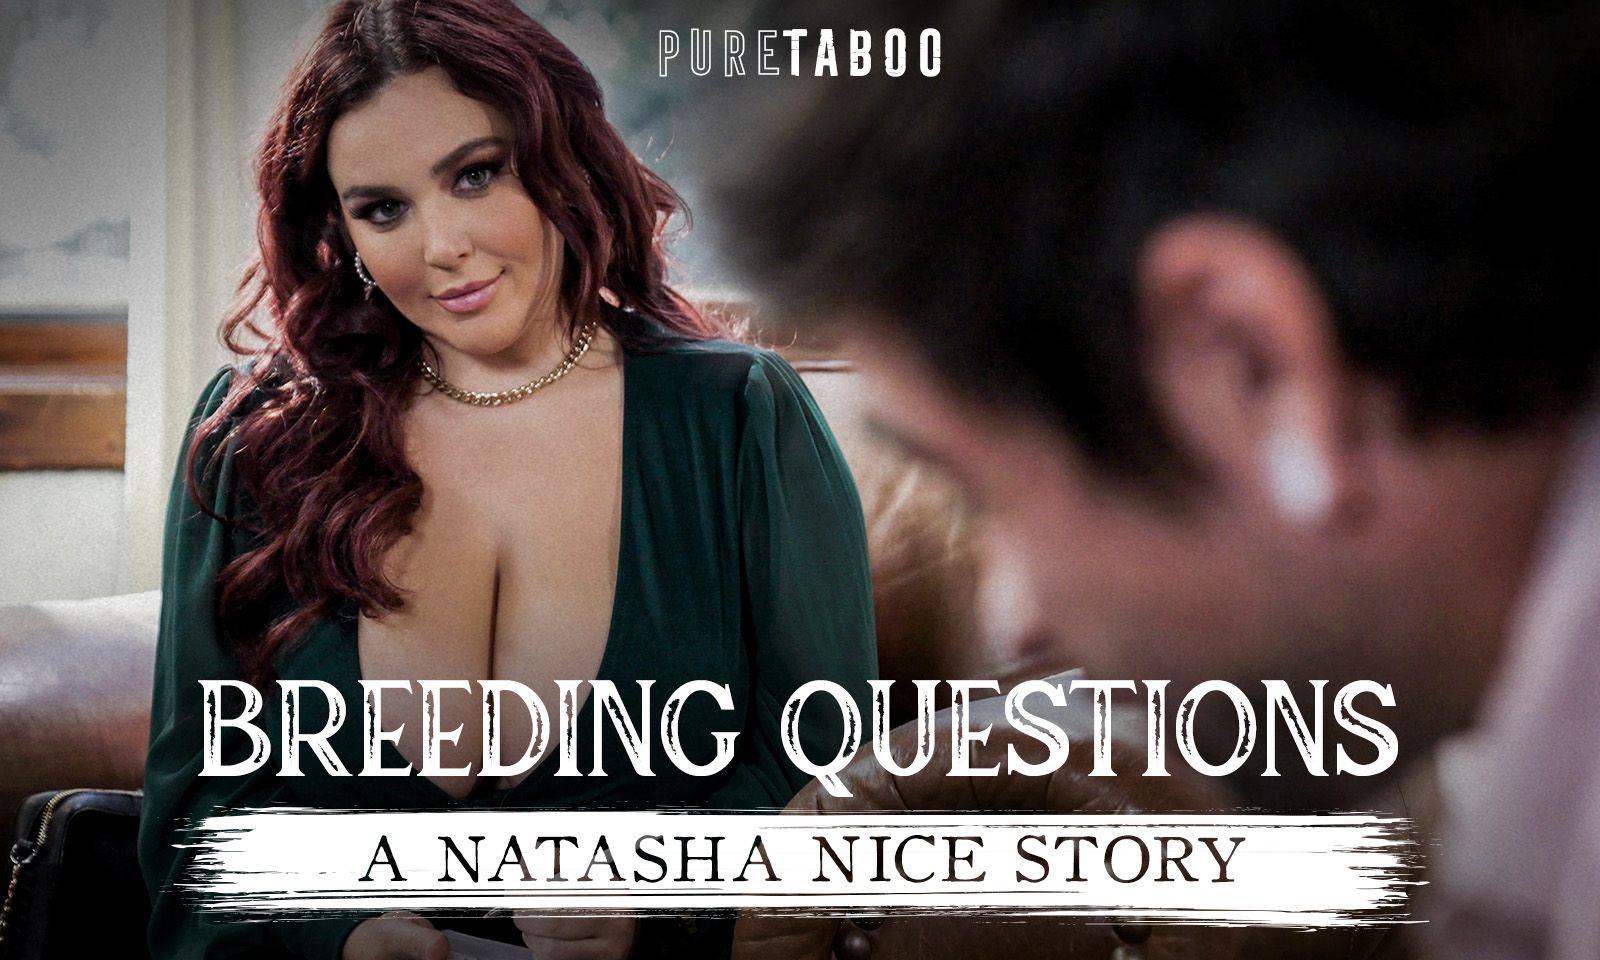 Natasha nice pure taboo